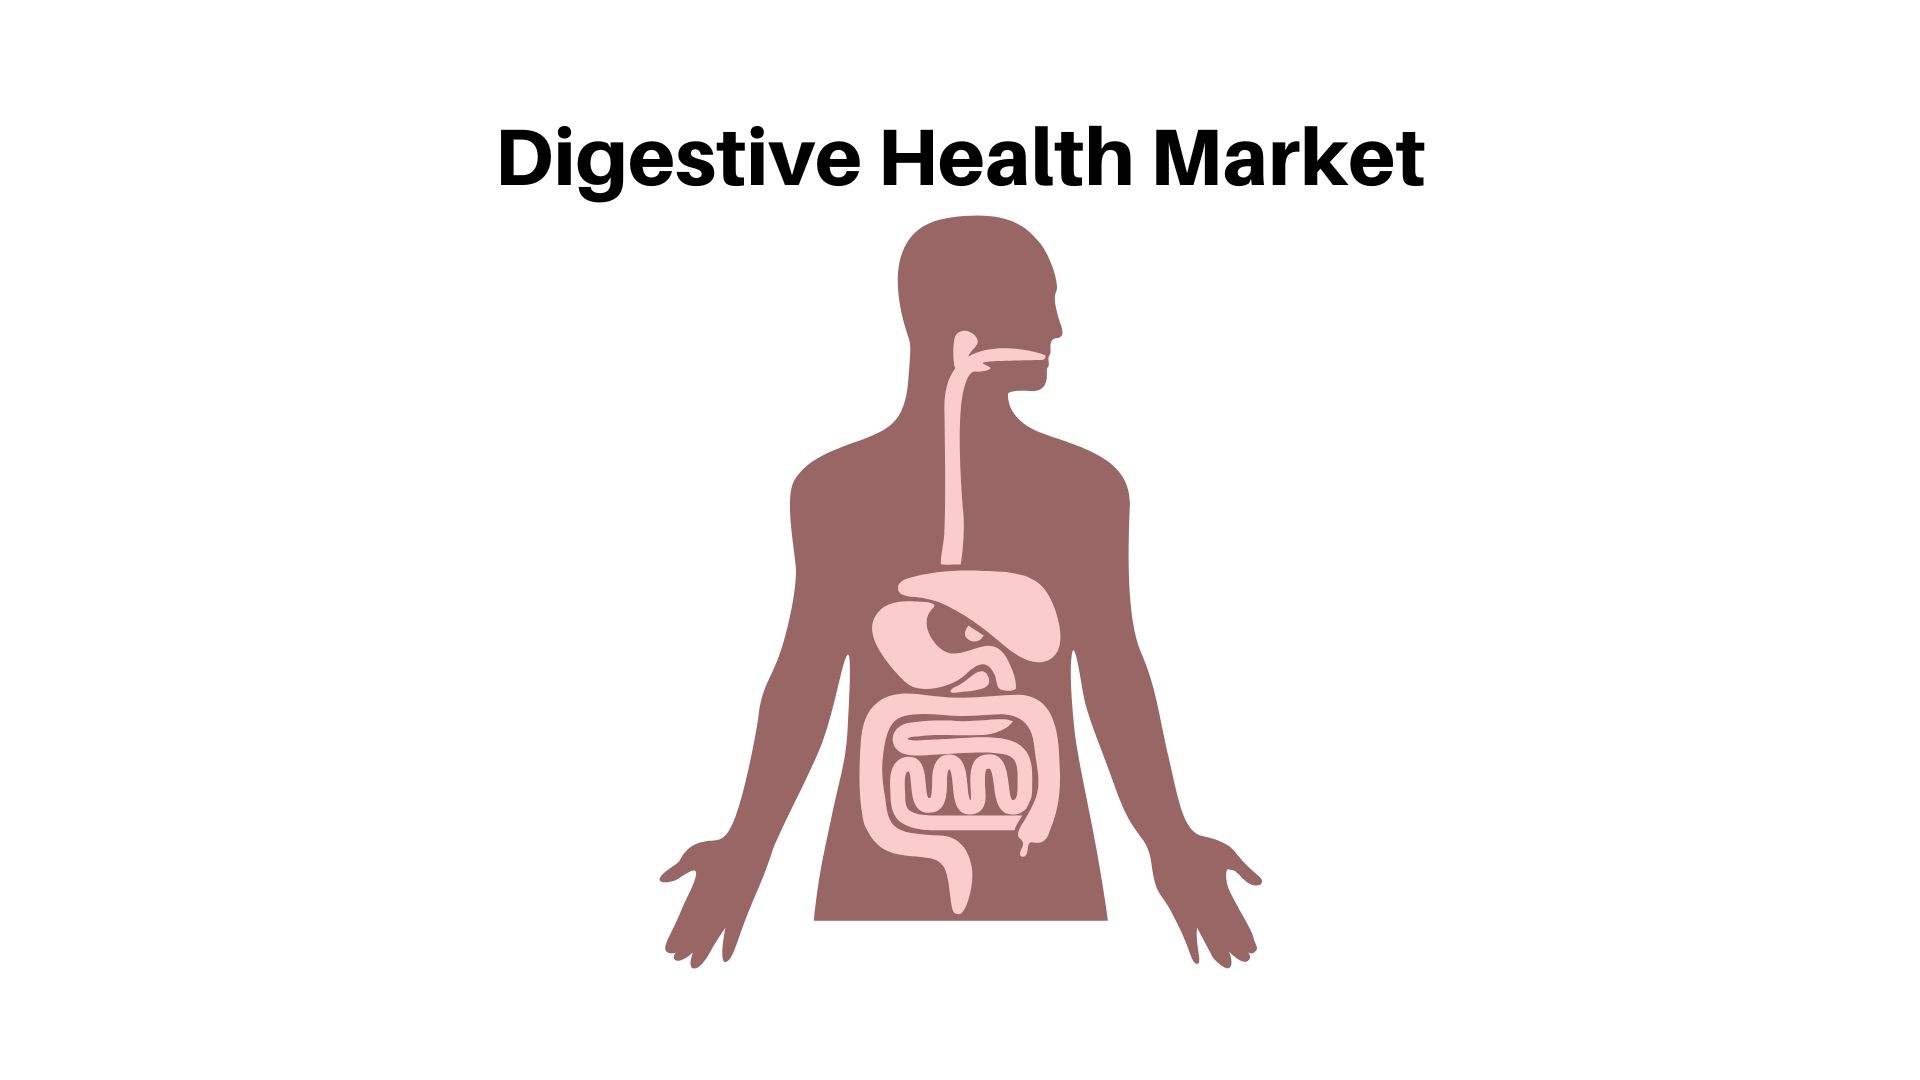 Digestive Health Market to Attain USD 106.4 Billion by 2032